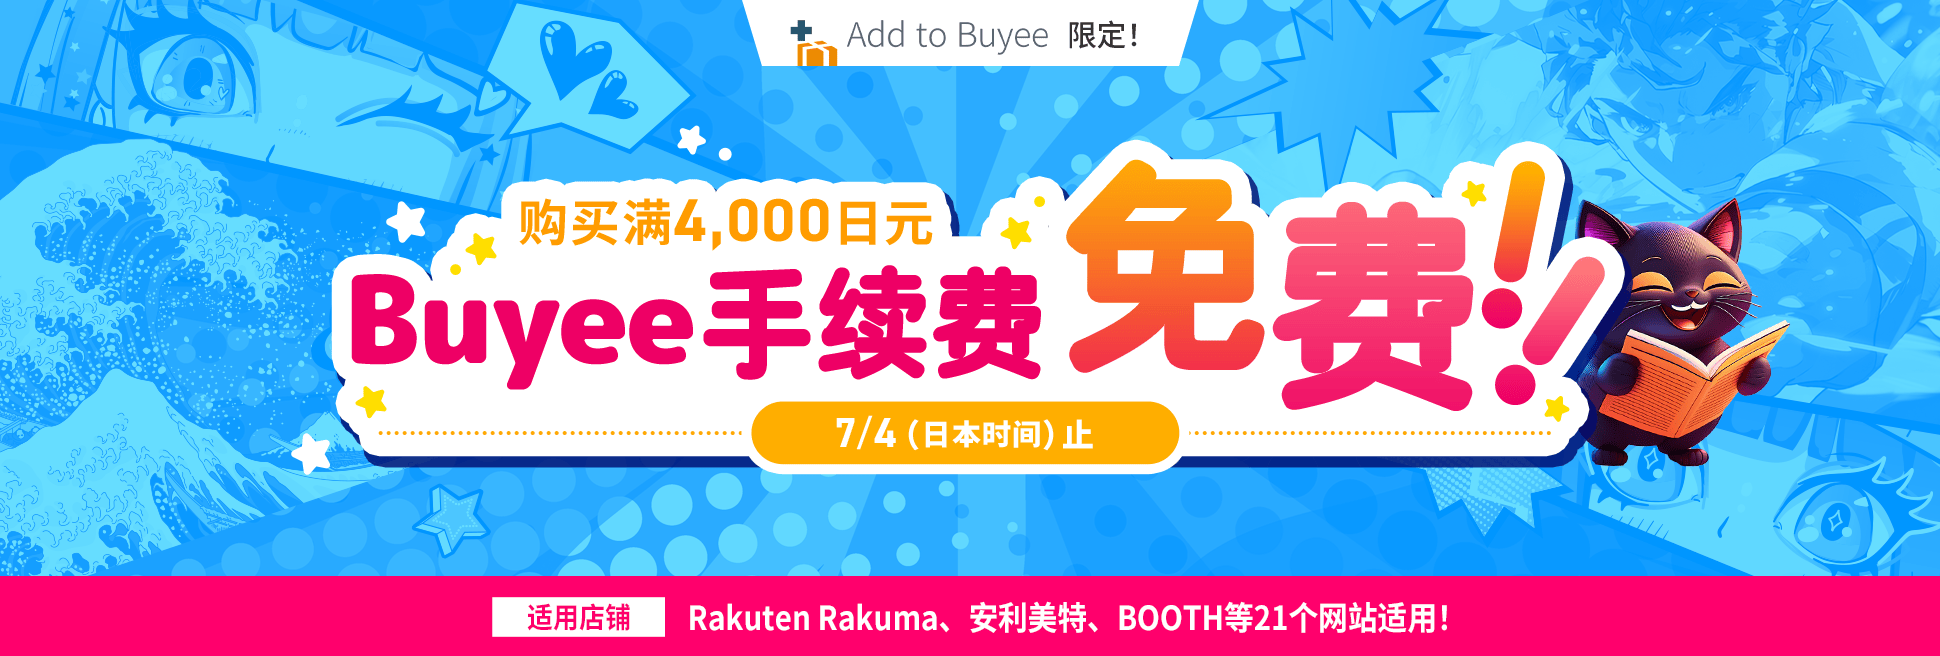 7月4日（日本时间）止Add to Buyee指定店铺单笔订单满4000日元免手续费！